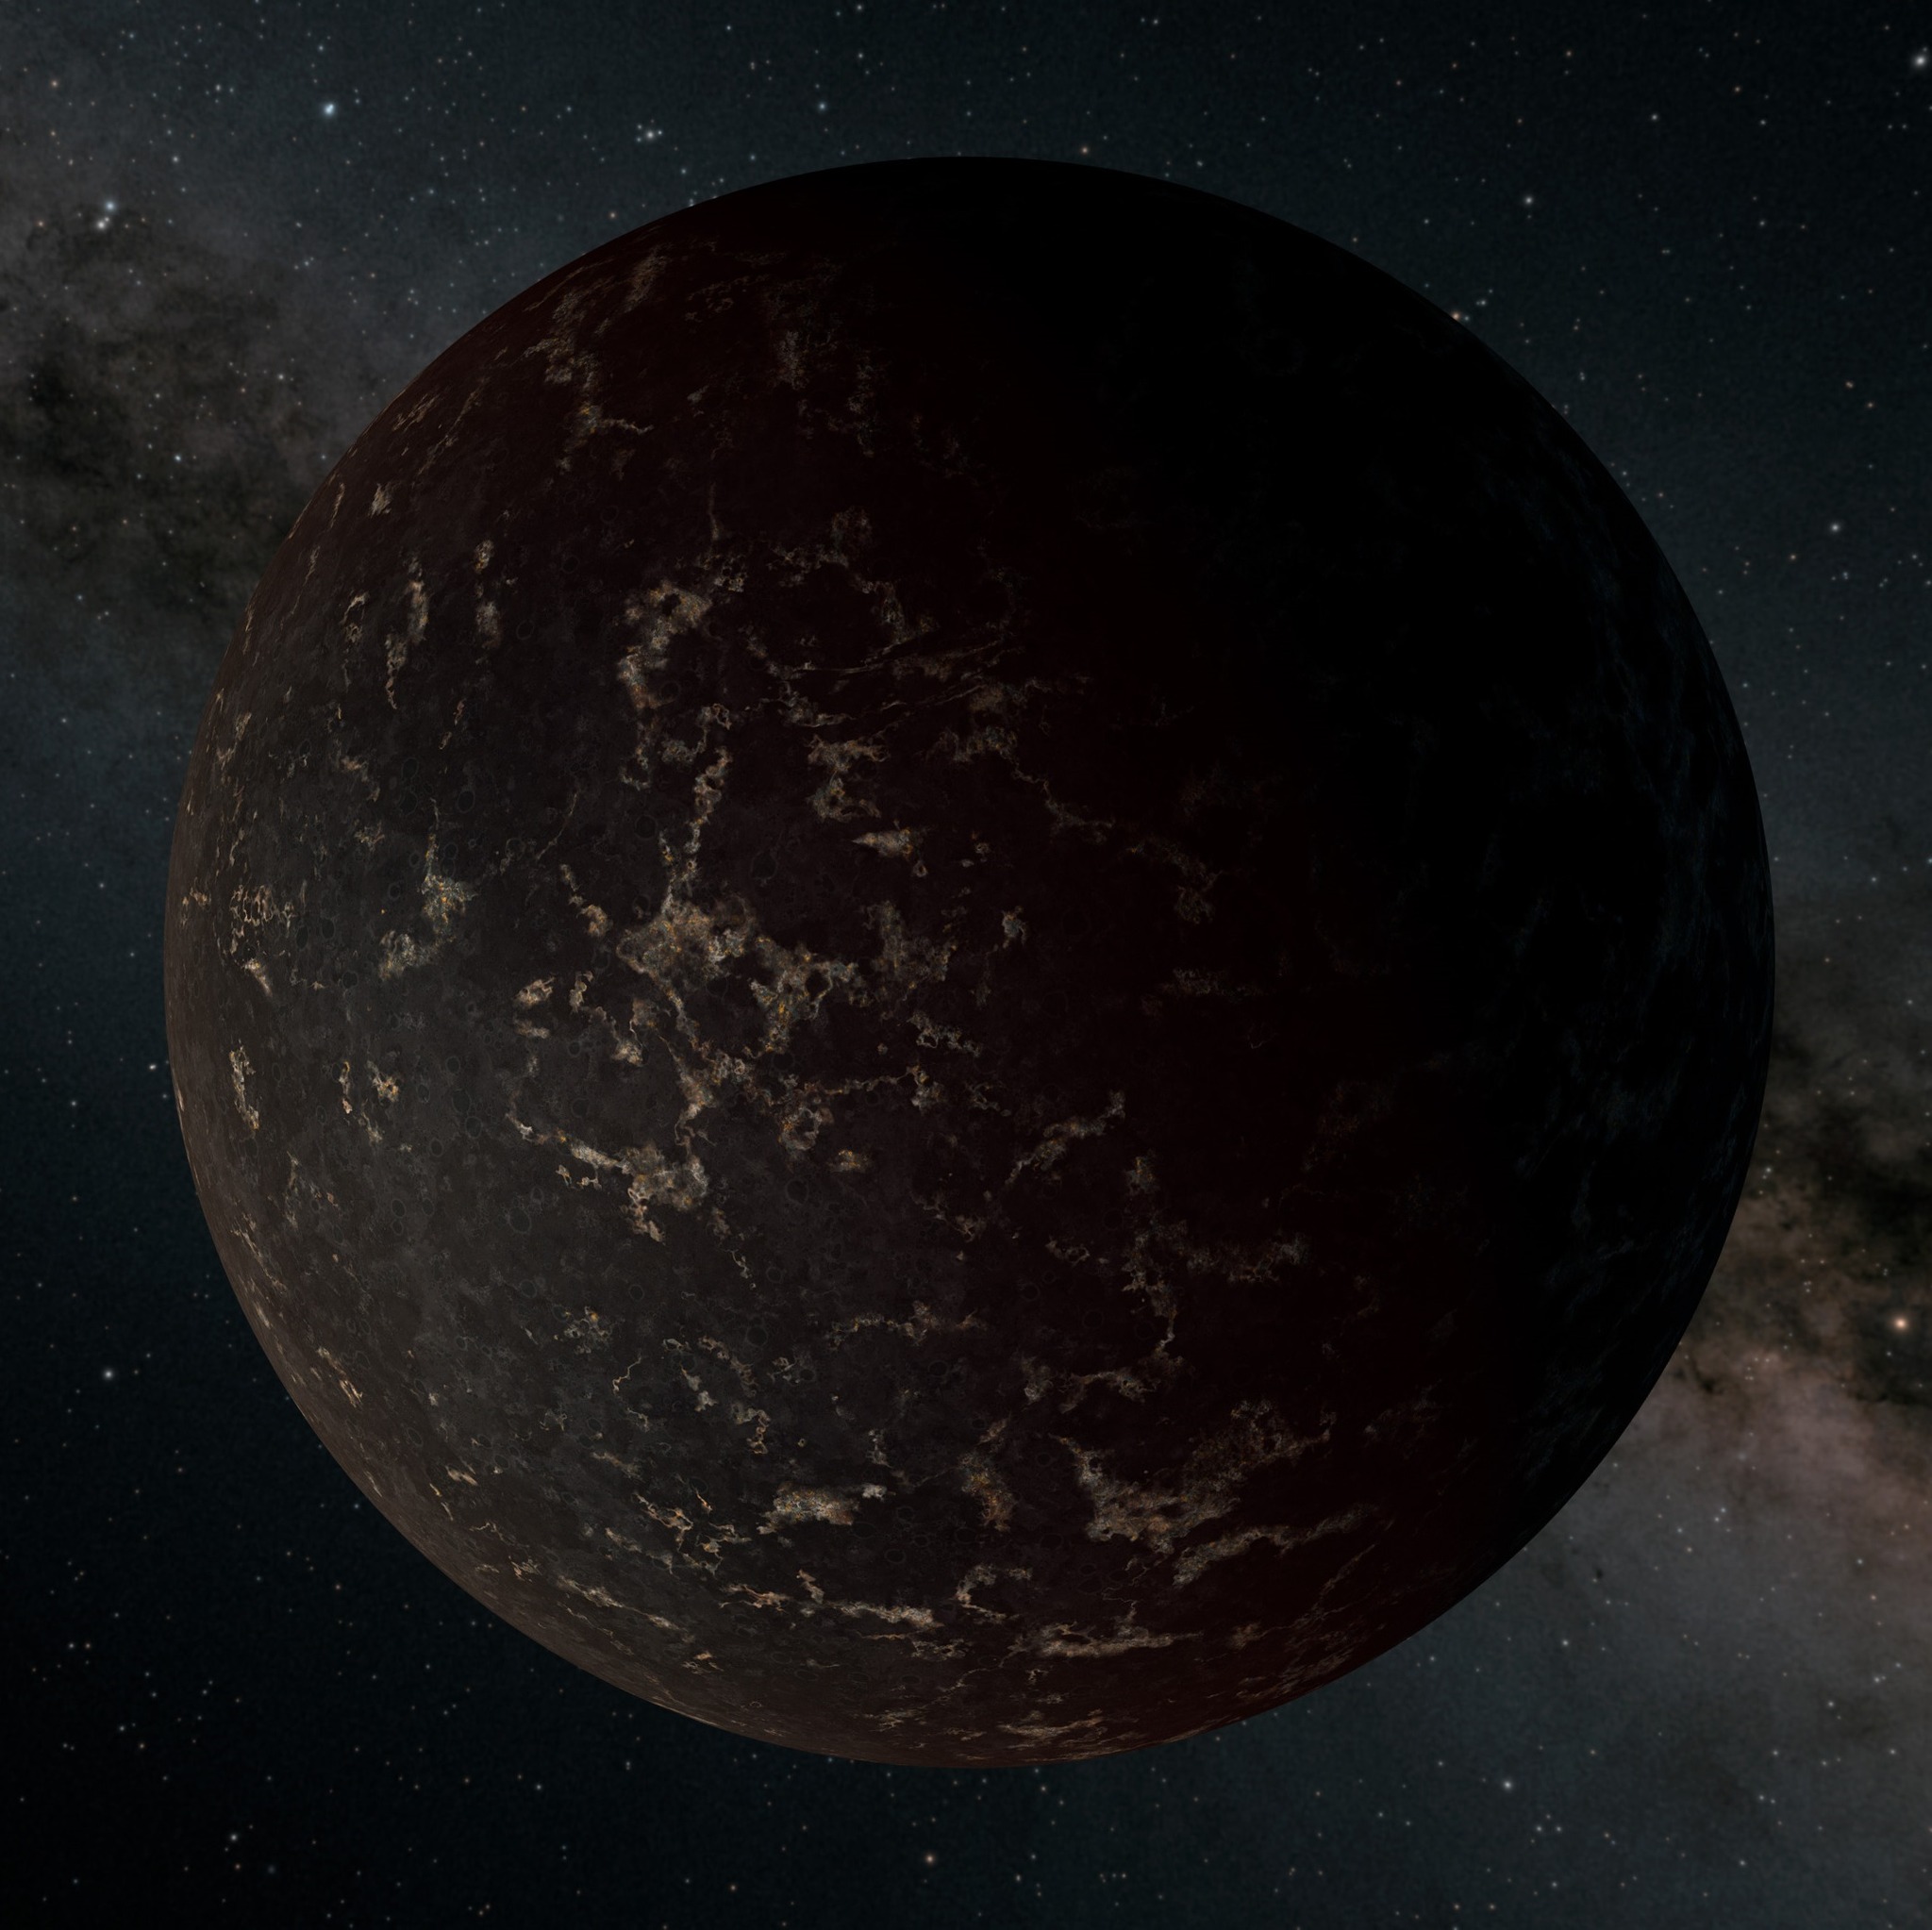 系外行星LHS 3844b的想象图，它的质量是地球的约1.3倍，围绕一颗 M型矮星运行。根据斯皮策太空望远镜的观测，这颗行星没有明显的大气层，其表面可能大部分被深色熔岩覆盖。                                          图片鸣谢: NASA/JPL-Caltech